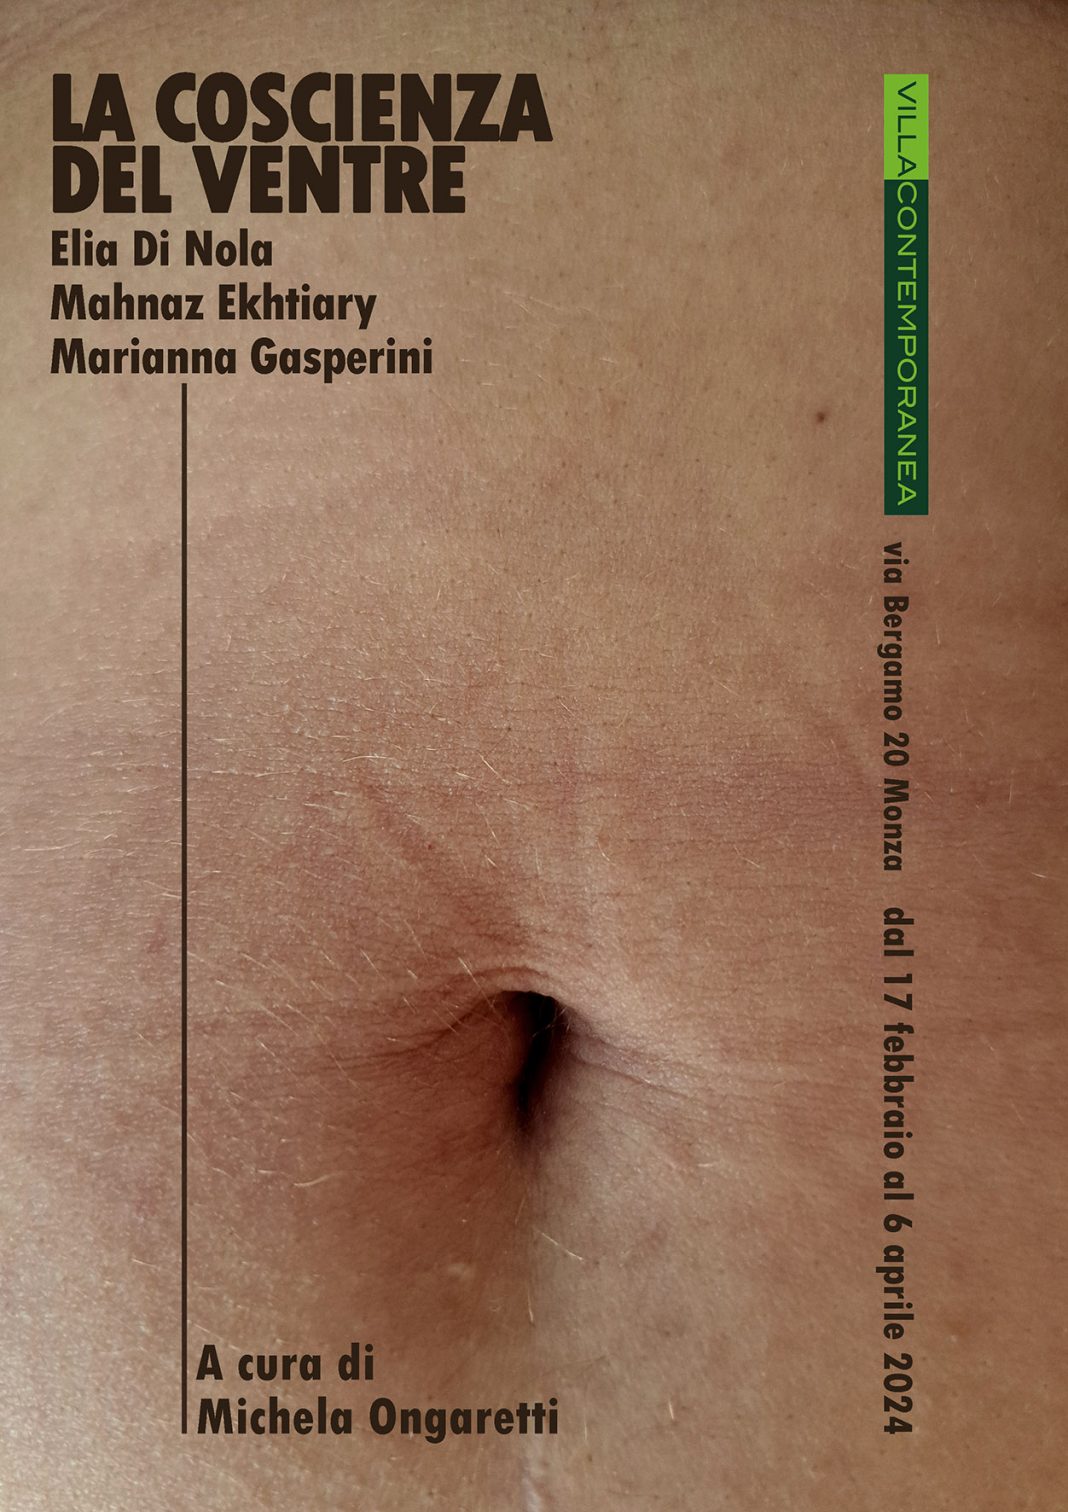 La coscienza del ventre – Elia Di Nola, Mahnaz Ekhtiary, Marianna Gasperinihttps://www.exibart.com/repository/media/formidable/11/img/3f7/locandina-copia-2-1068x1512.jpg